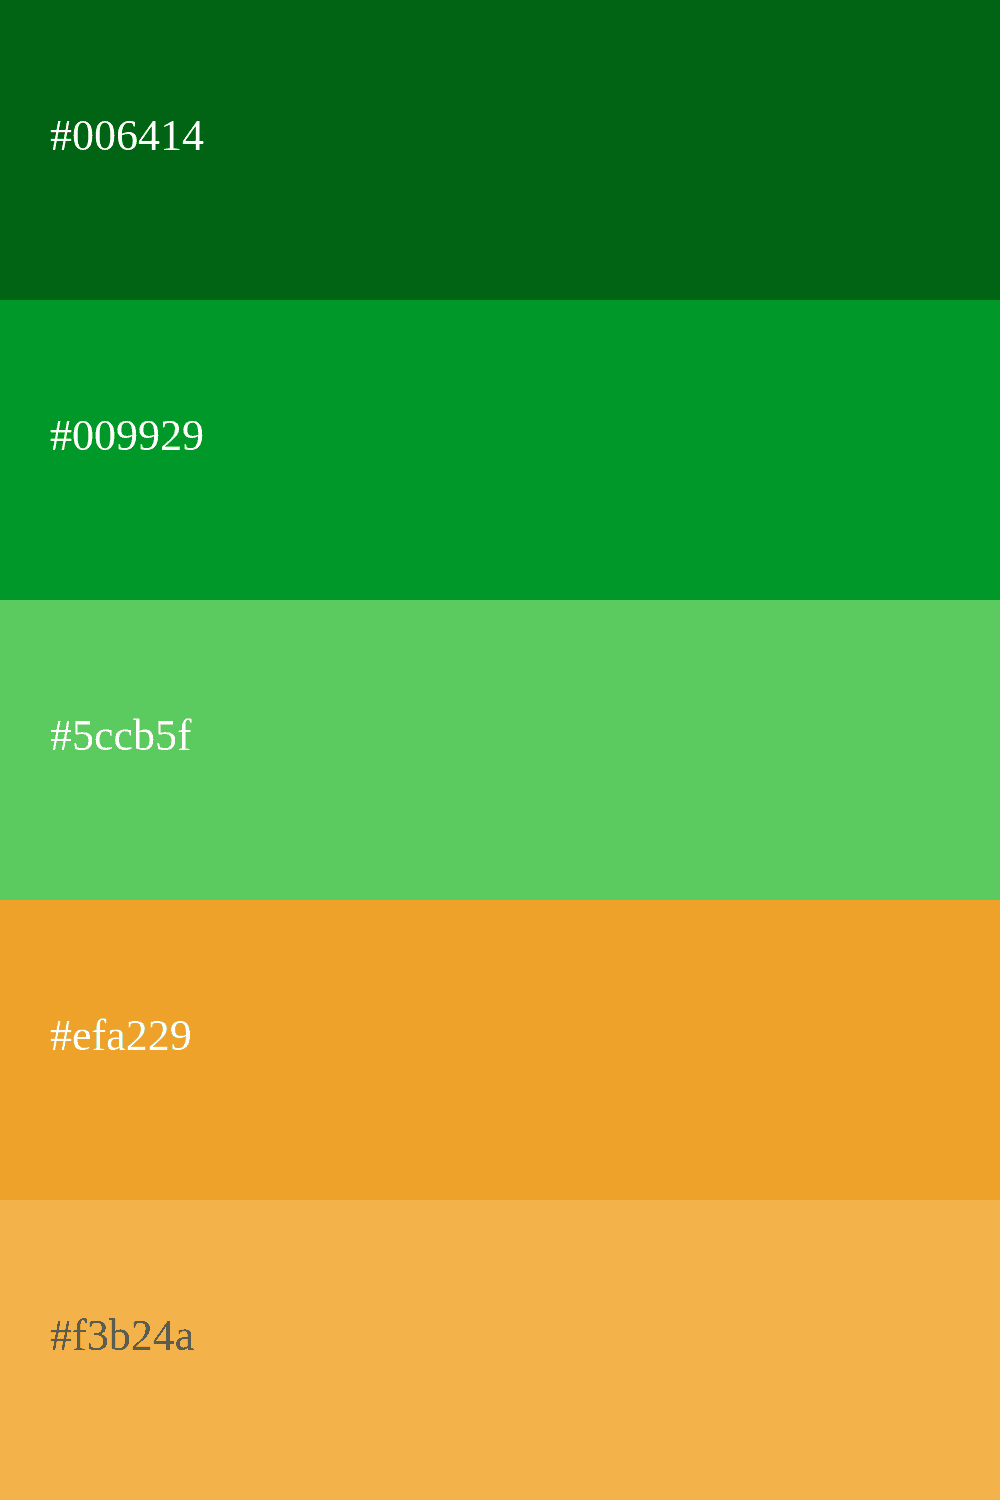 couleur verte et orange